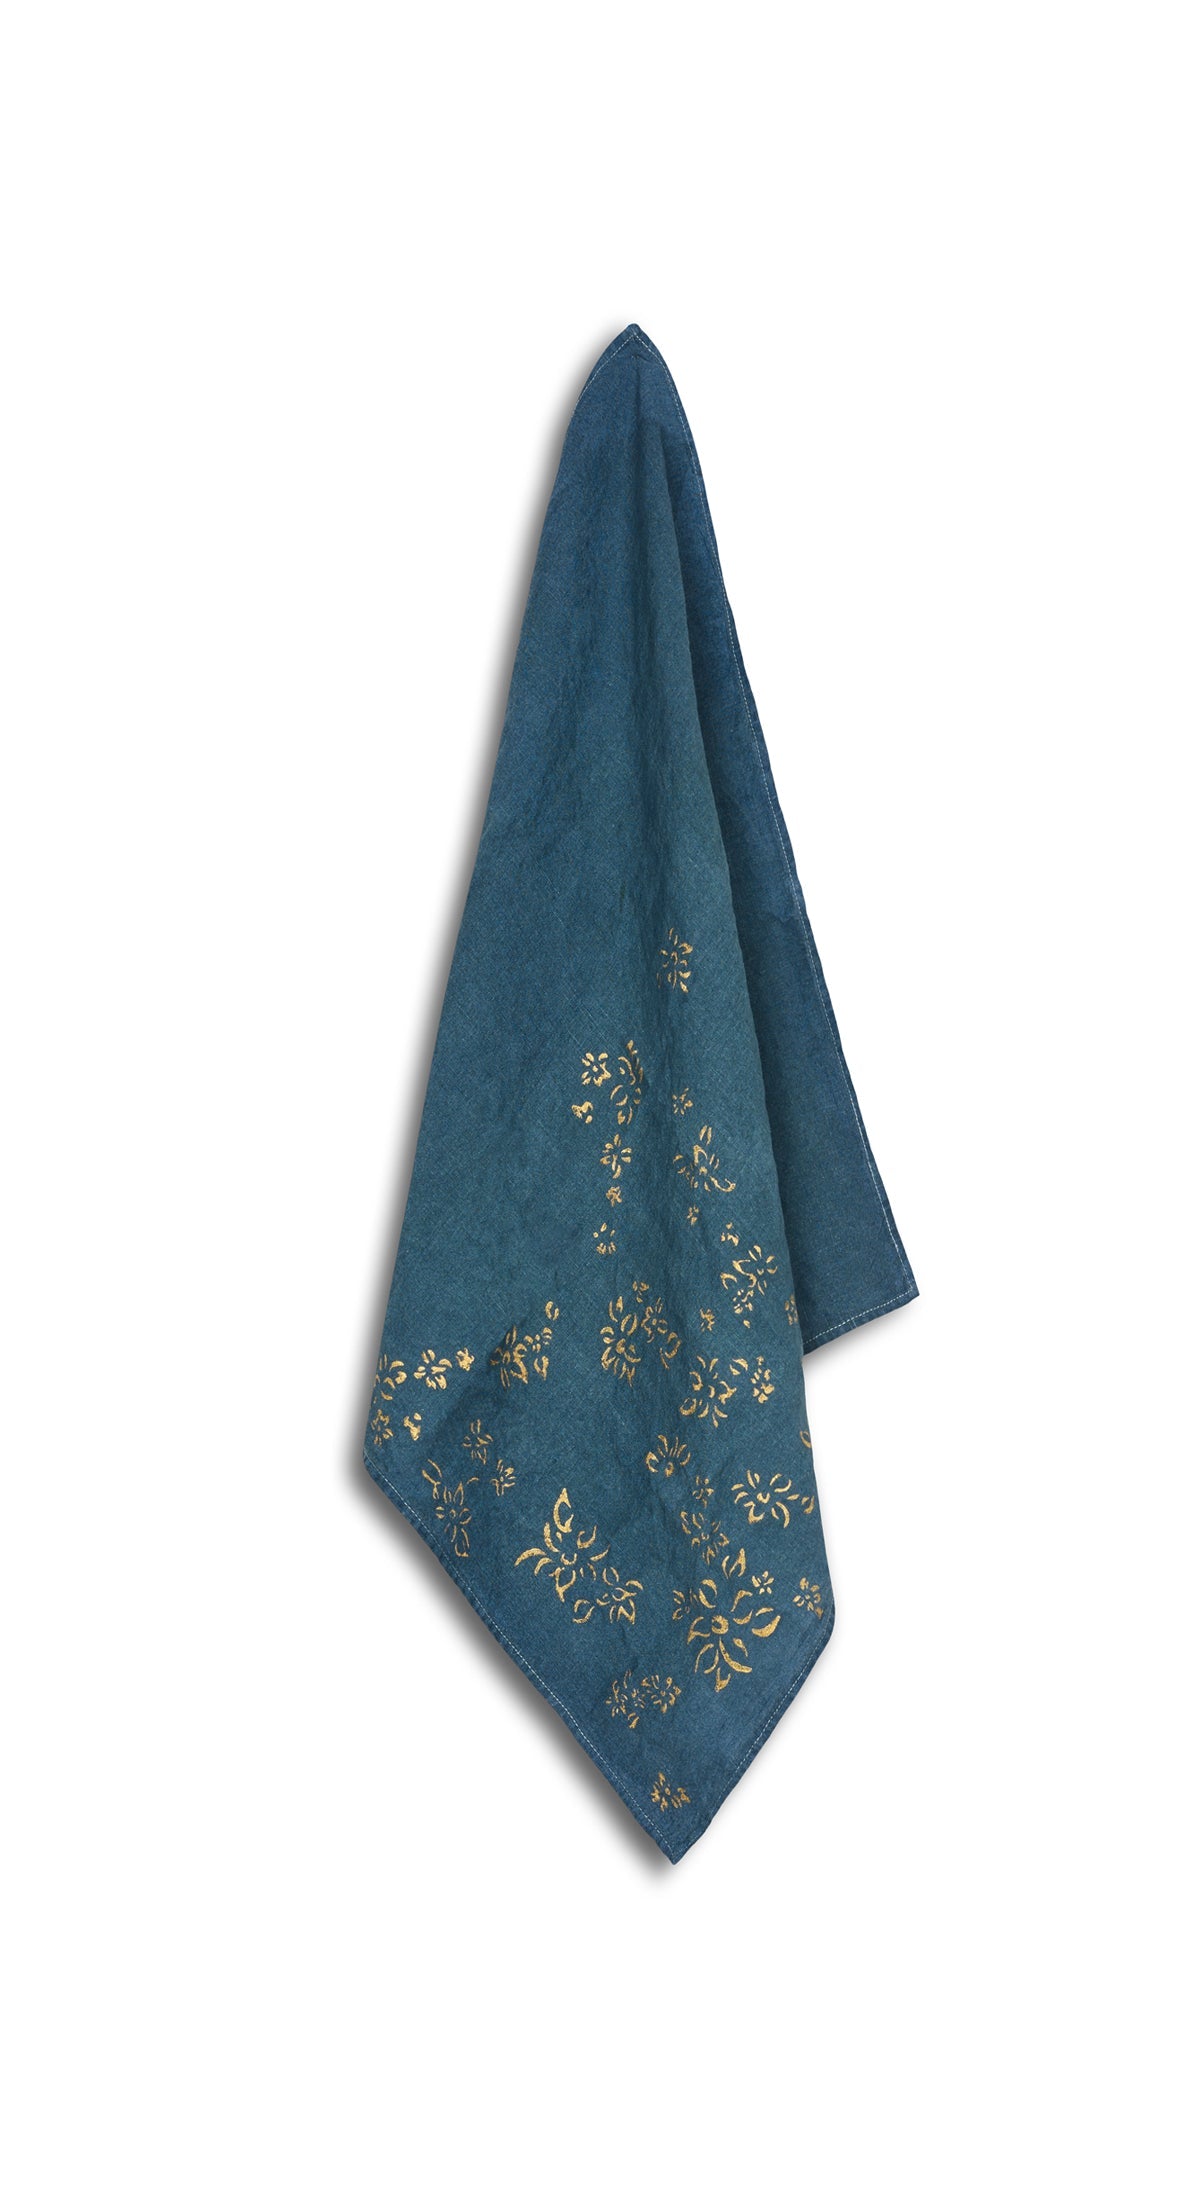 Bernadette's Hand Stamped Falling Flower On Full Field Linen Napkin in Deep Blue & Gold, 50x50cm